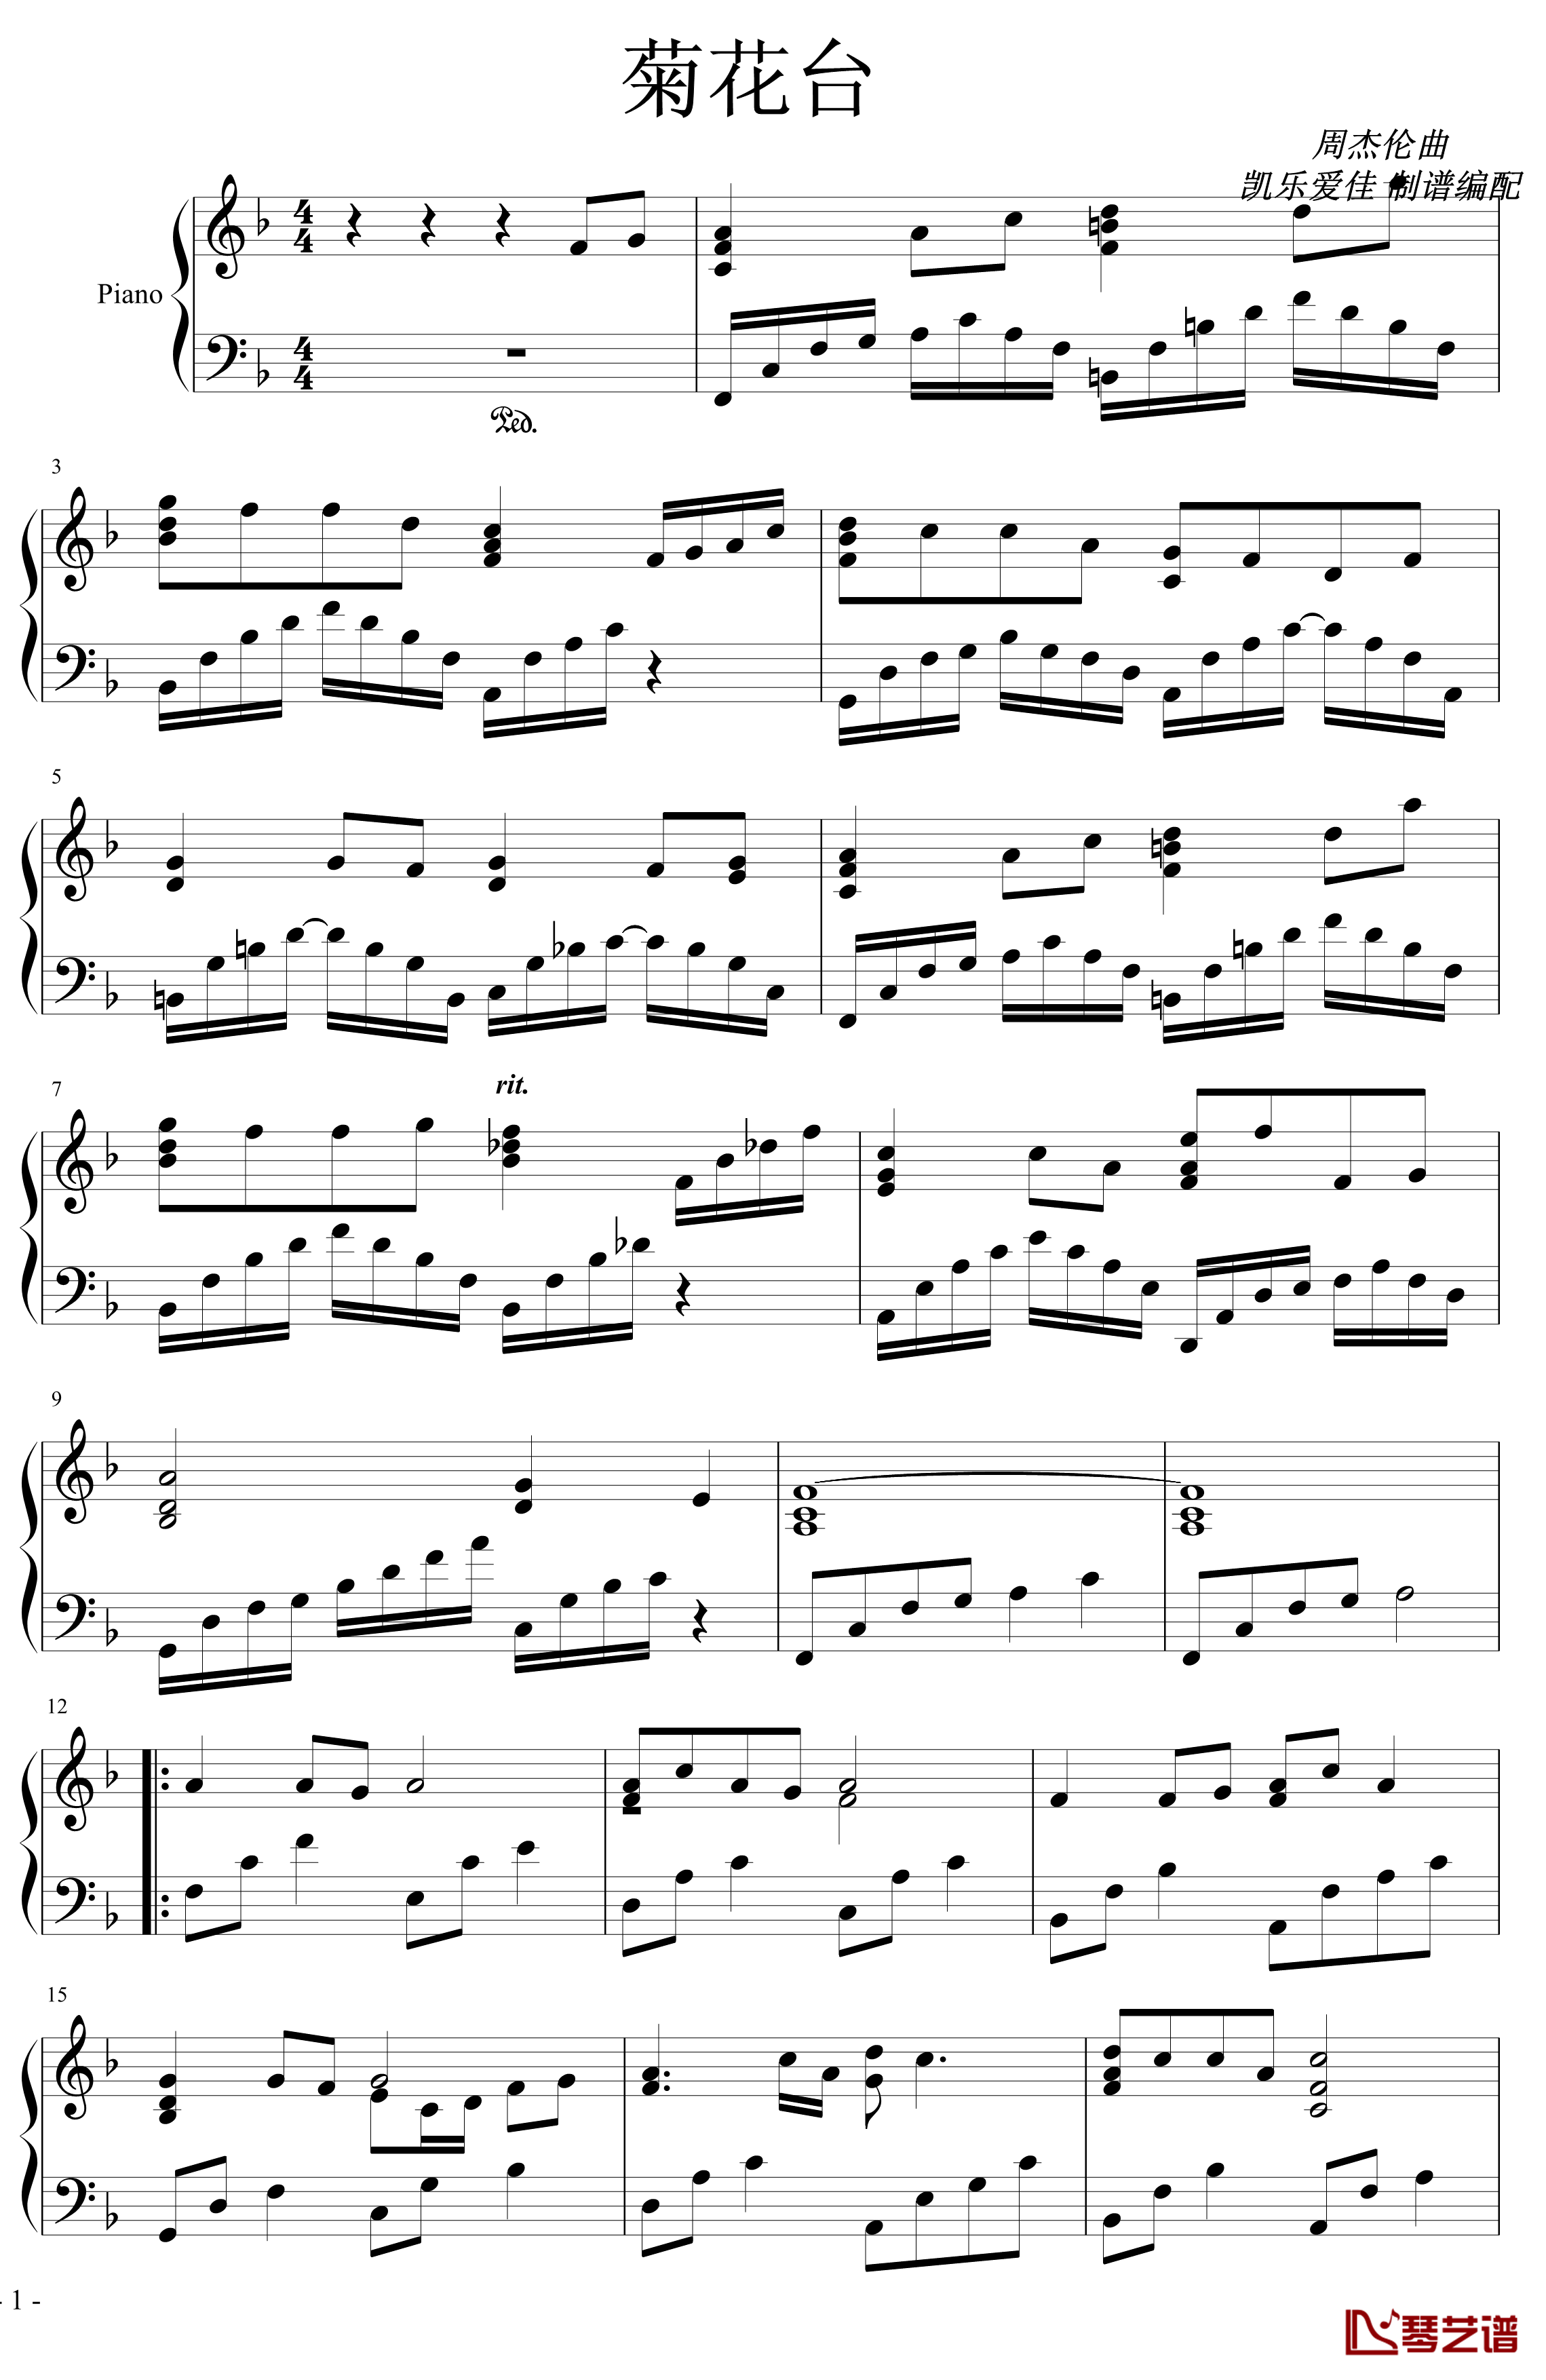 菊花台钢琴谱-超级演奏版-周杰伦1